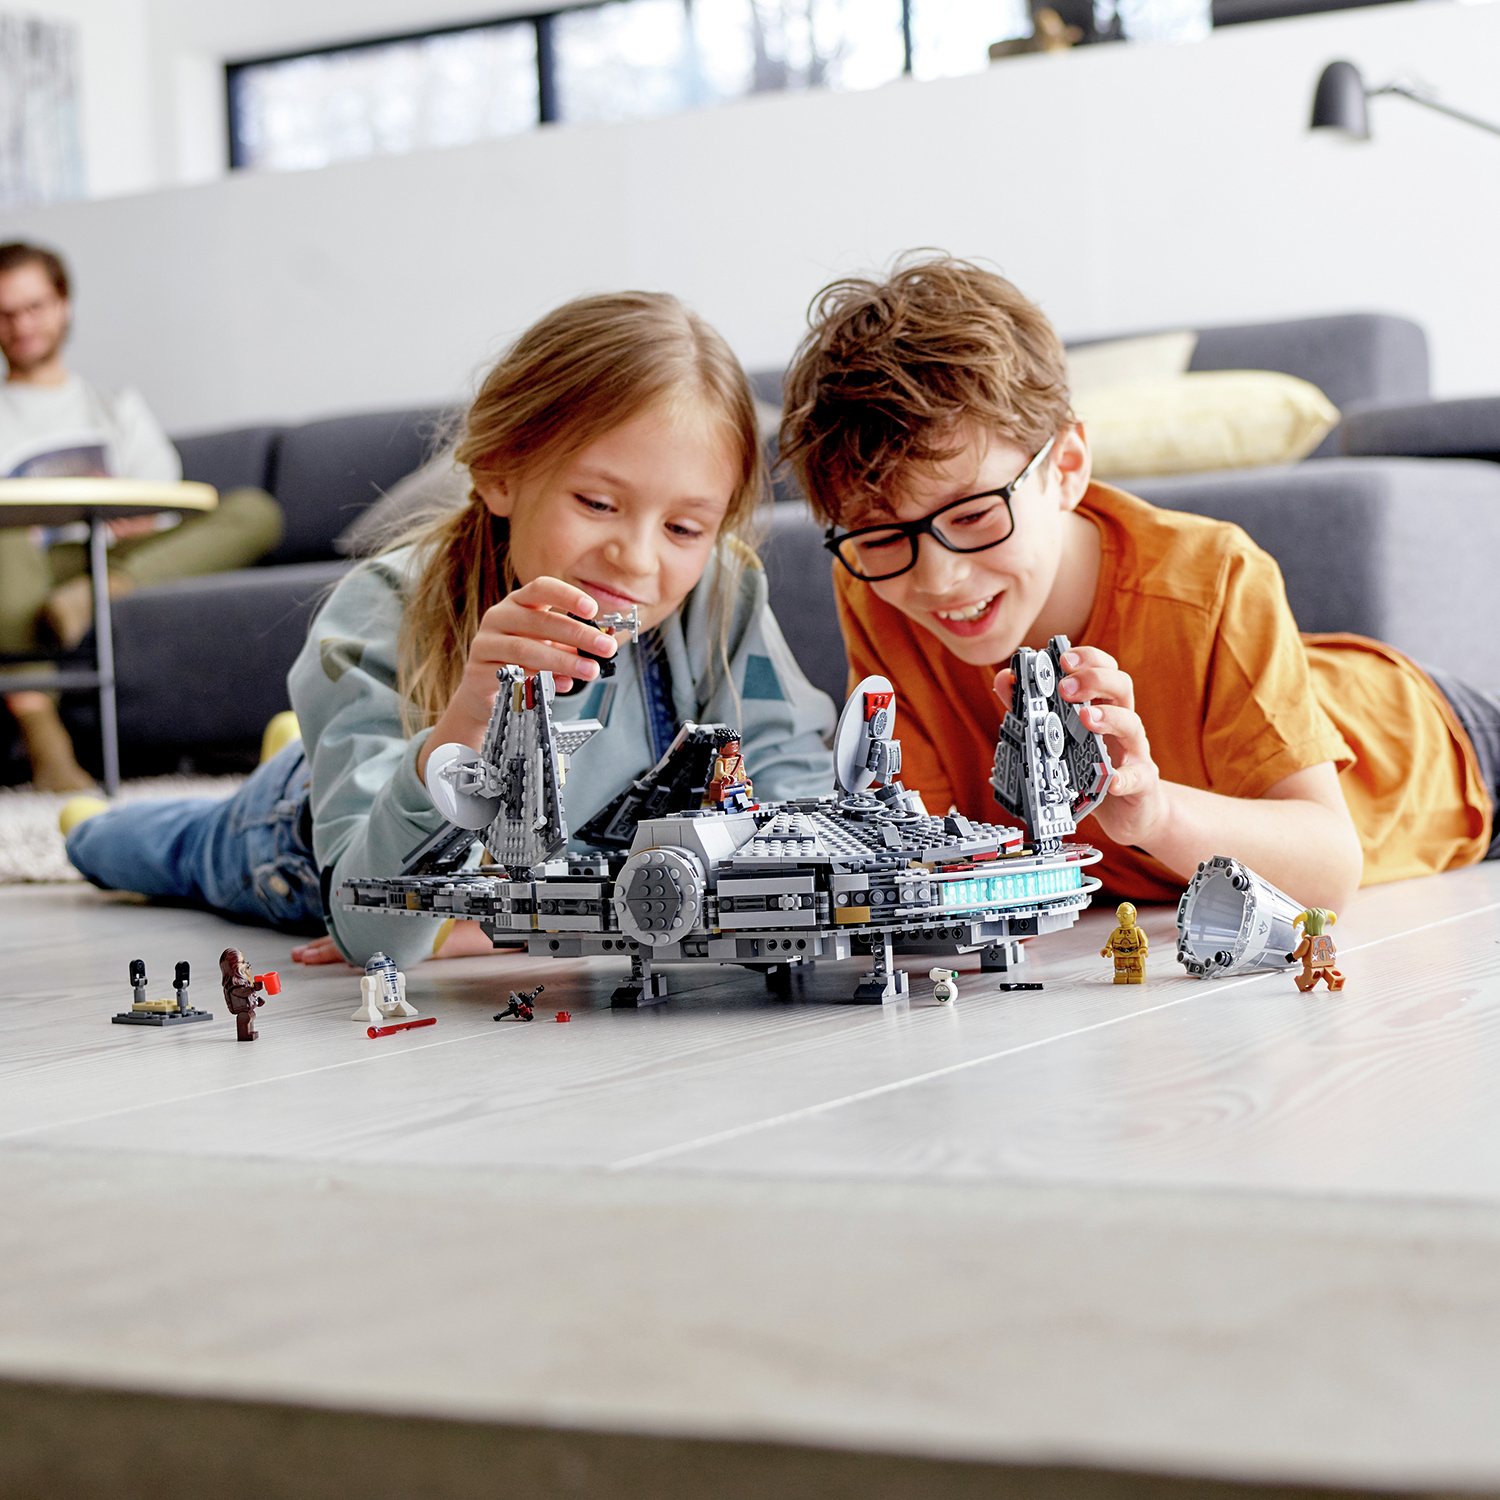 LEGO Star Wars Millennium Falcon Building Set Review